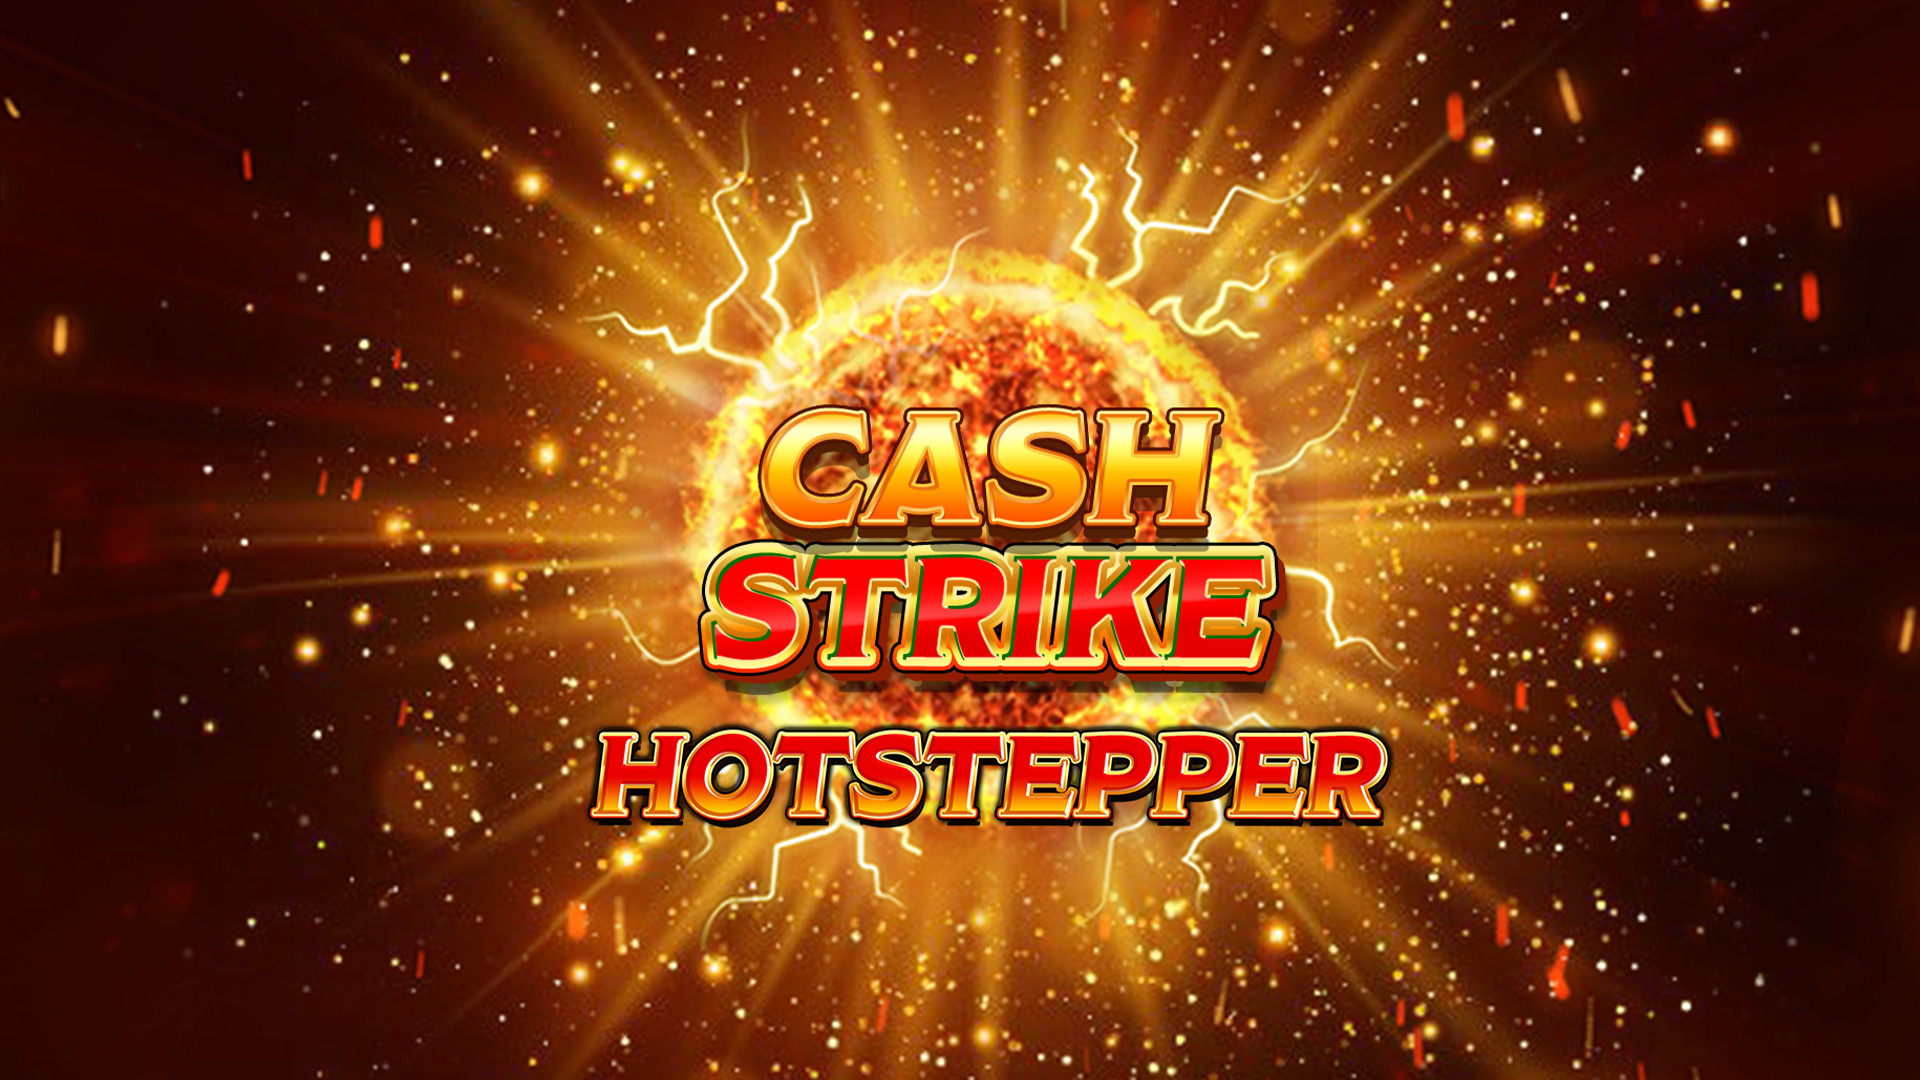 Cash Strike Hot Stepper